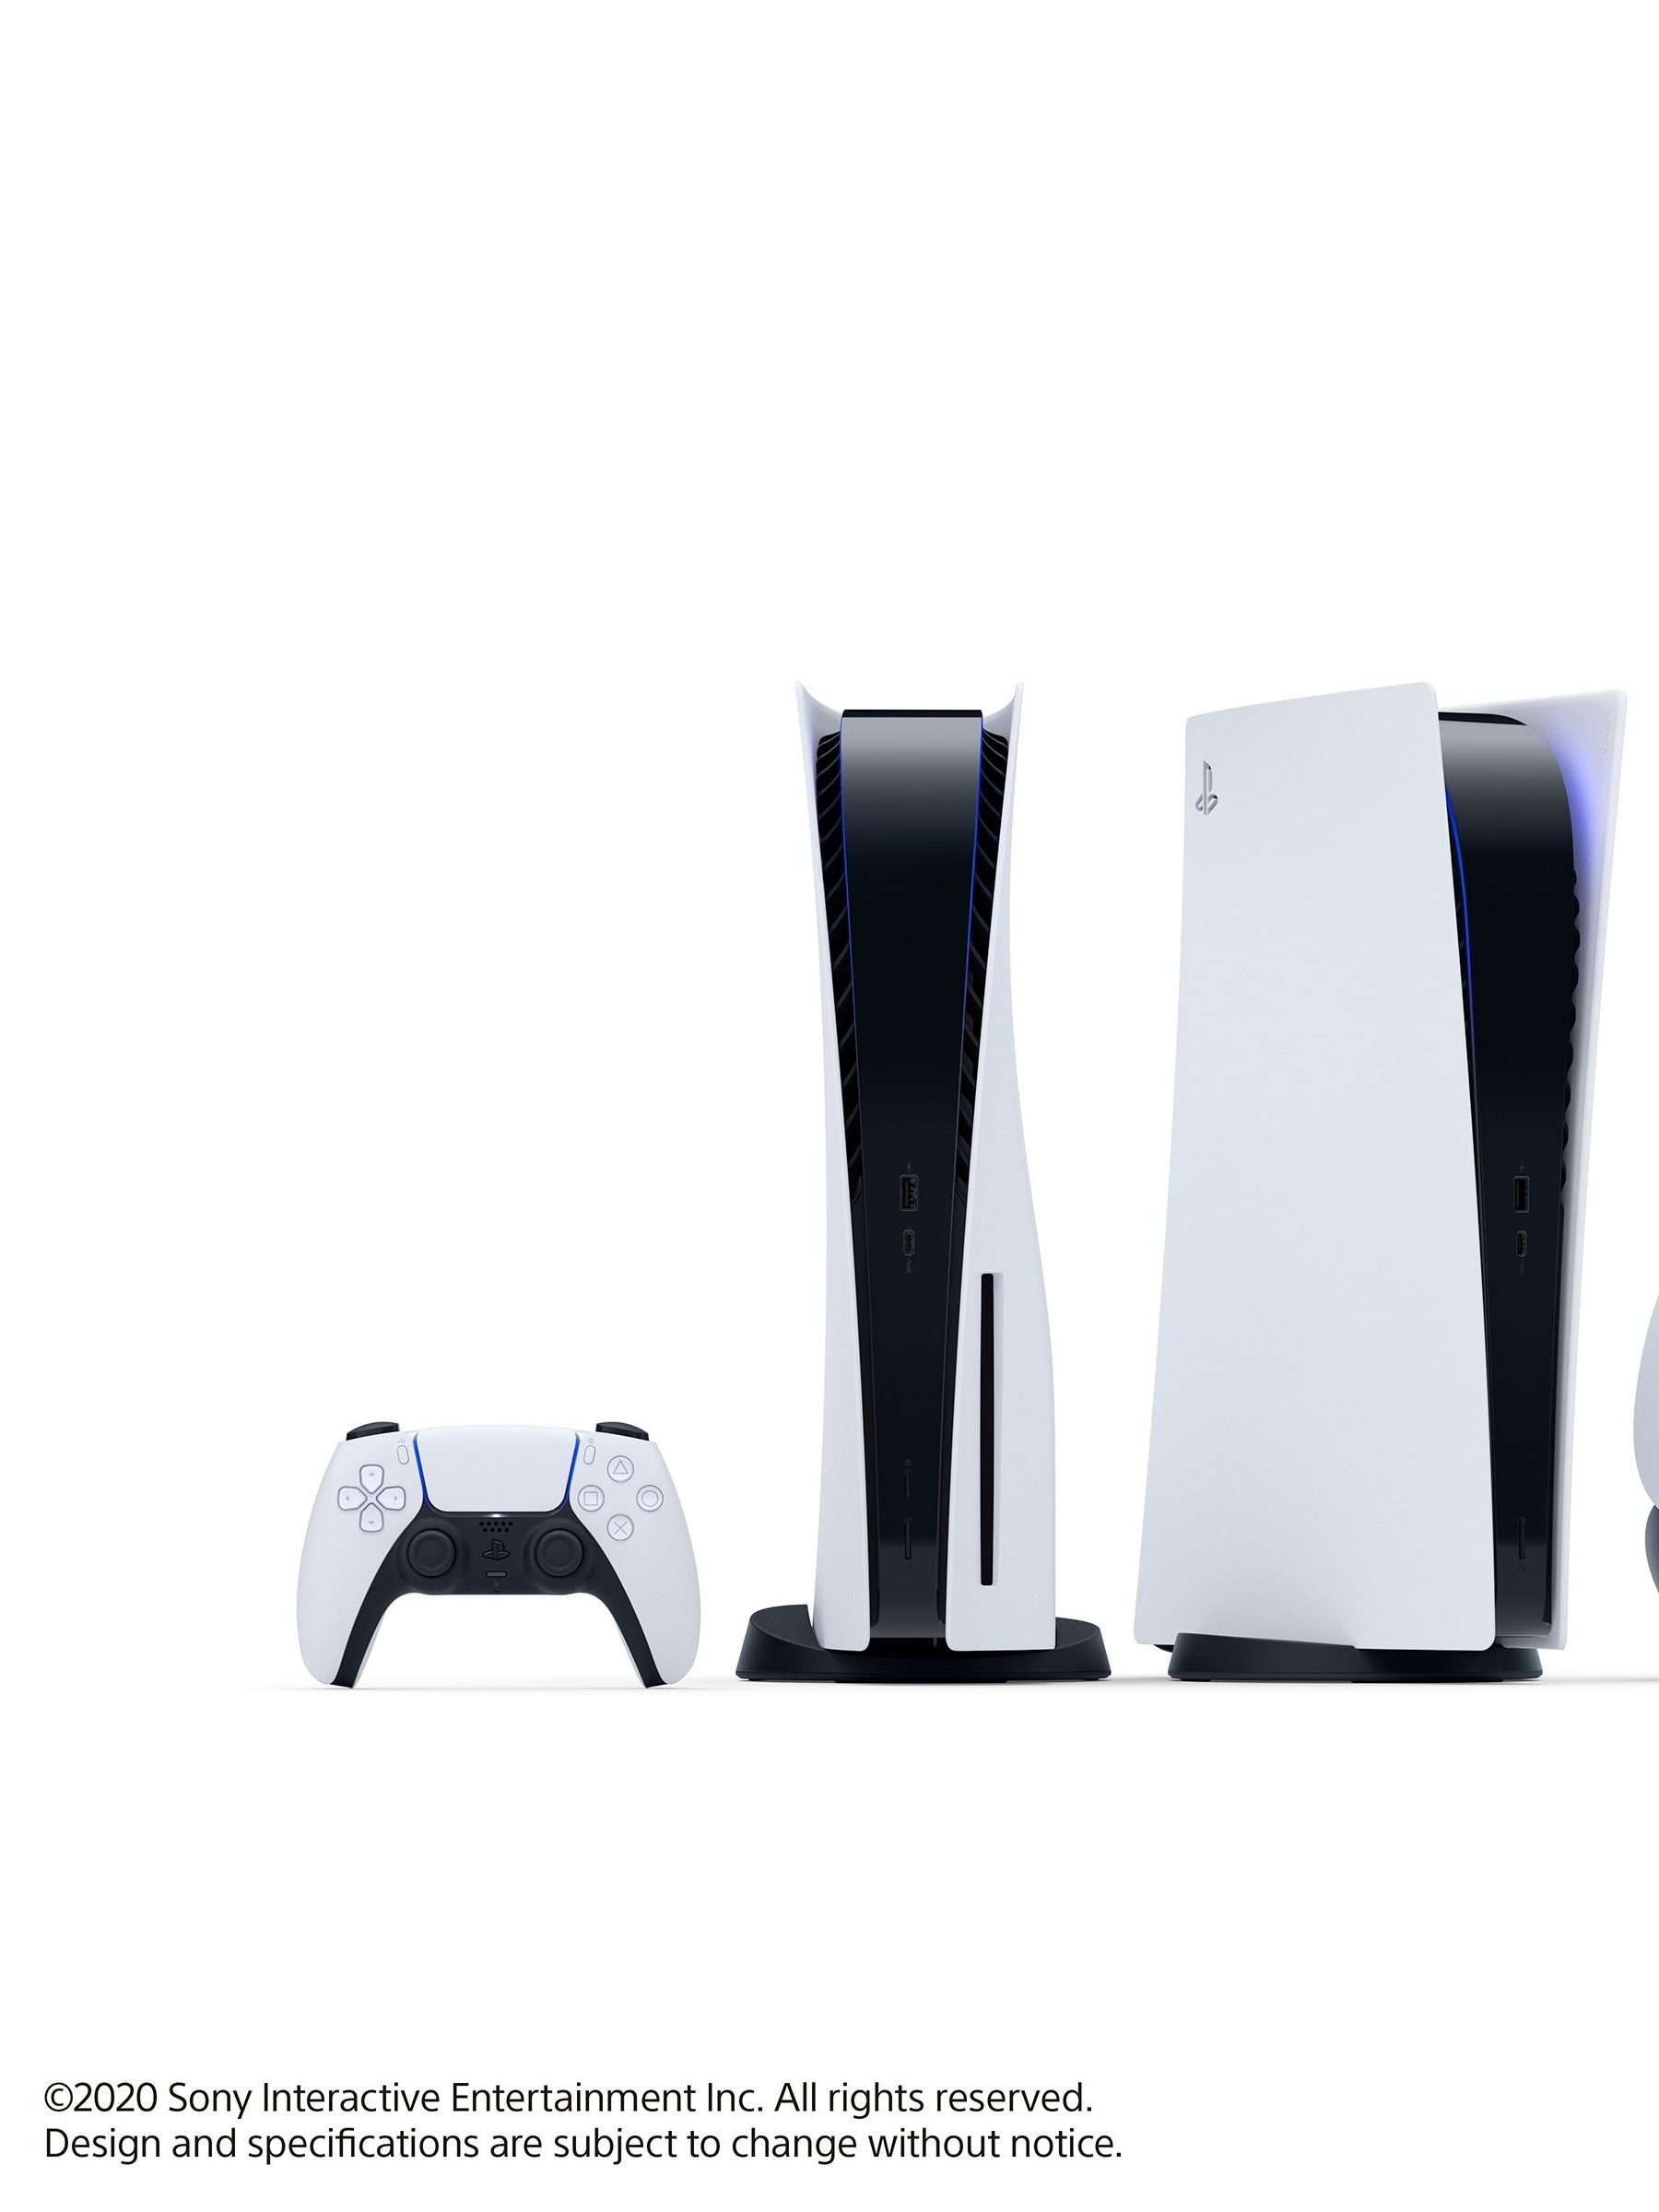 Sony coloca diversos jogos e acessórios de PS4 e PS5 em oferta com até 40%  de desconto